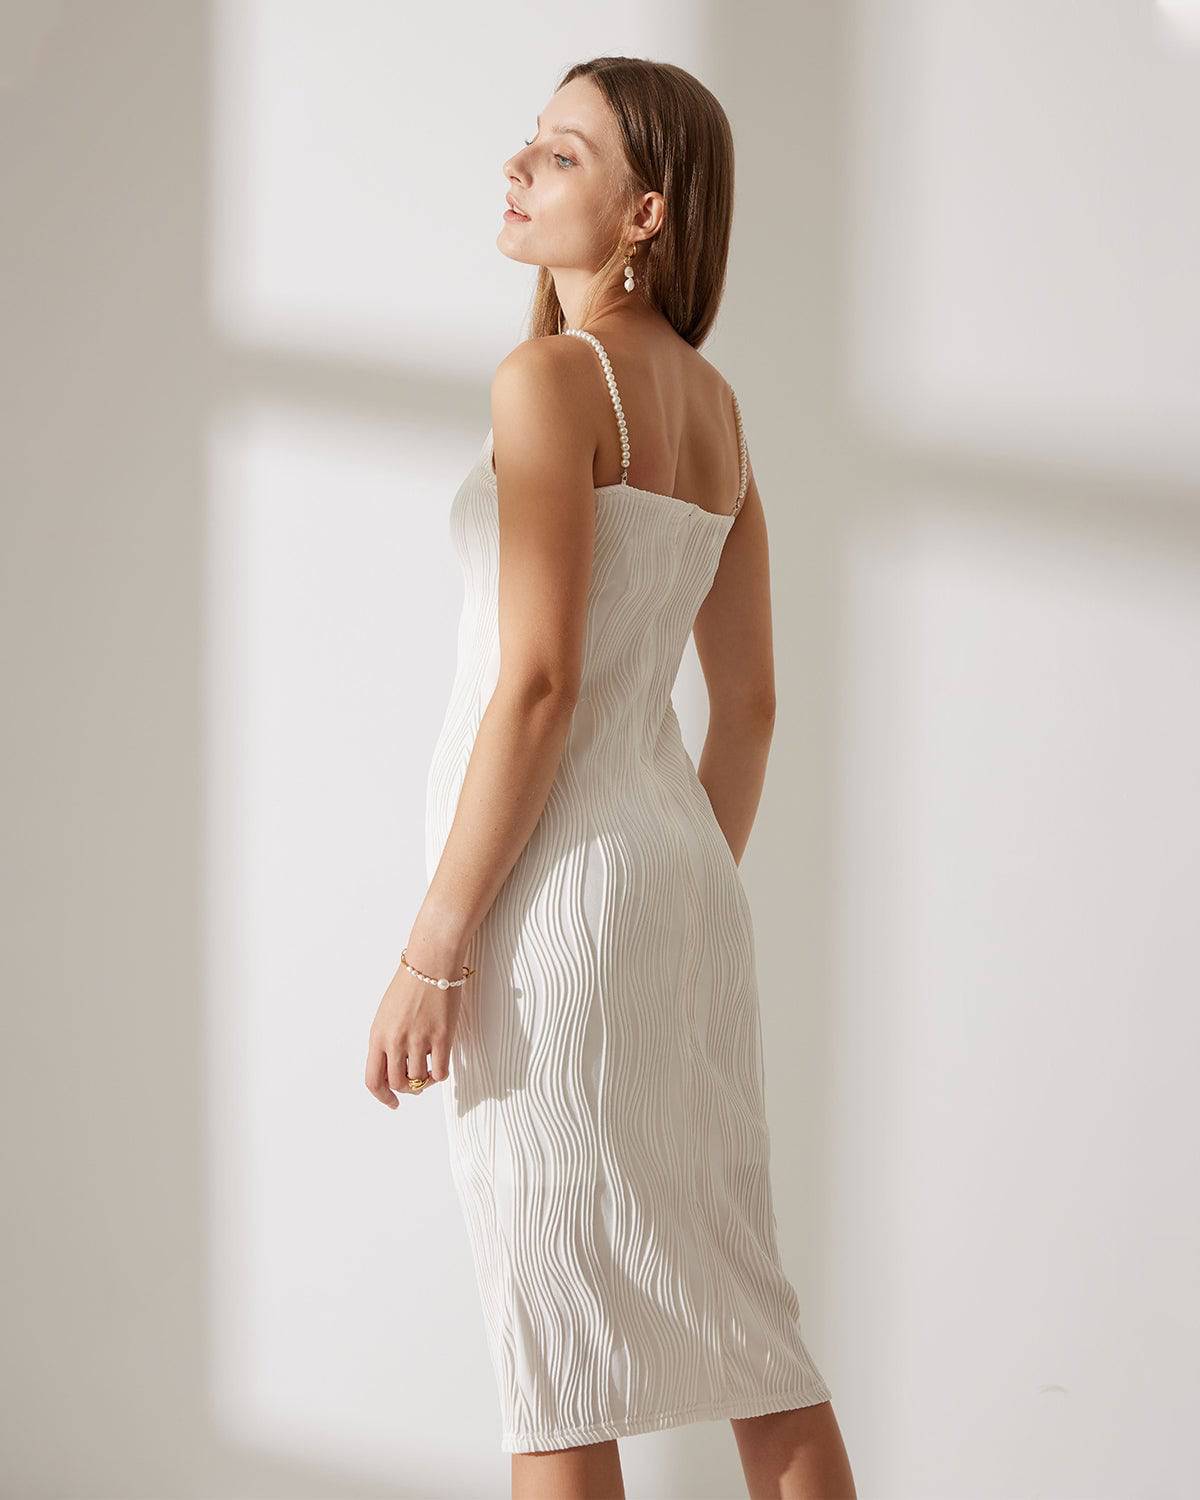 Linen Slip Dress, Simple Lovely Off White Linen Base Layer Dress - Linenbee